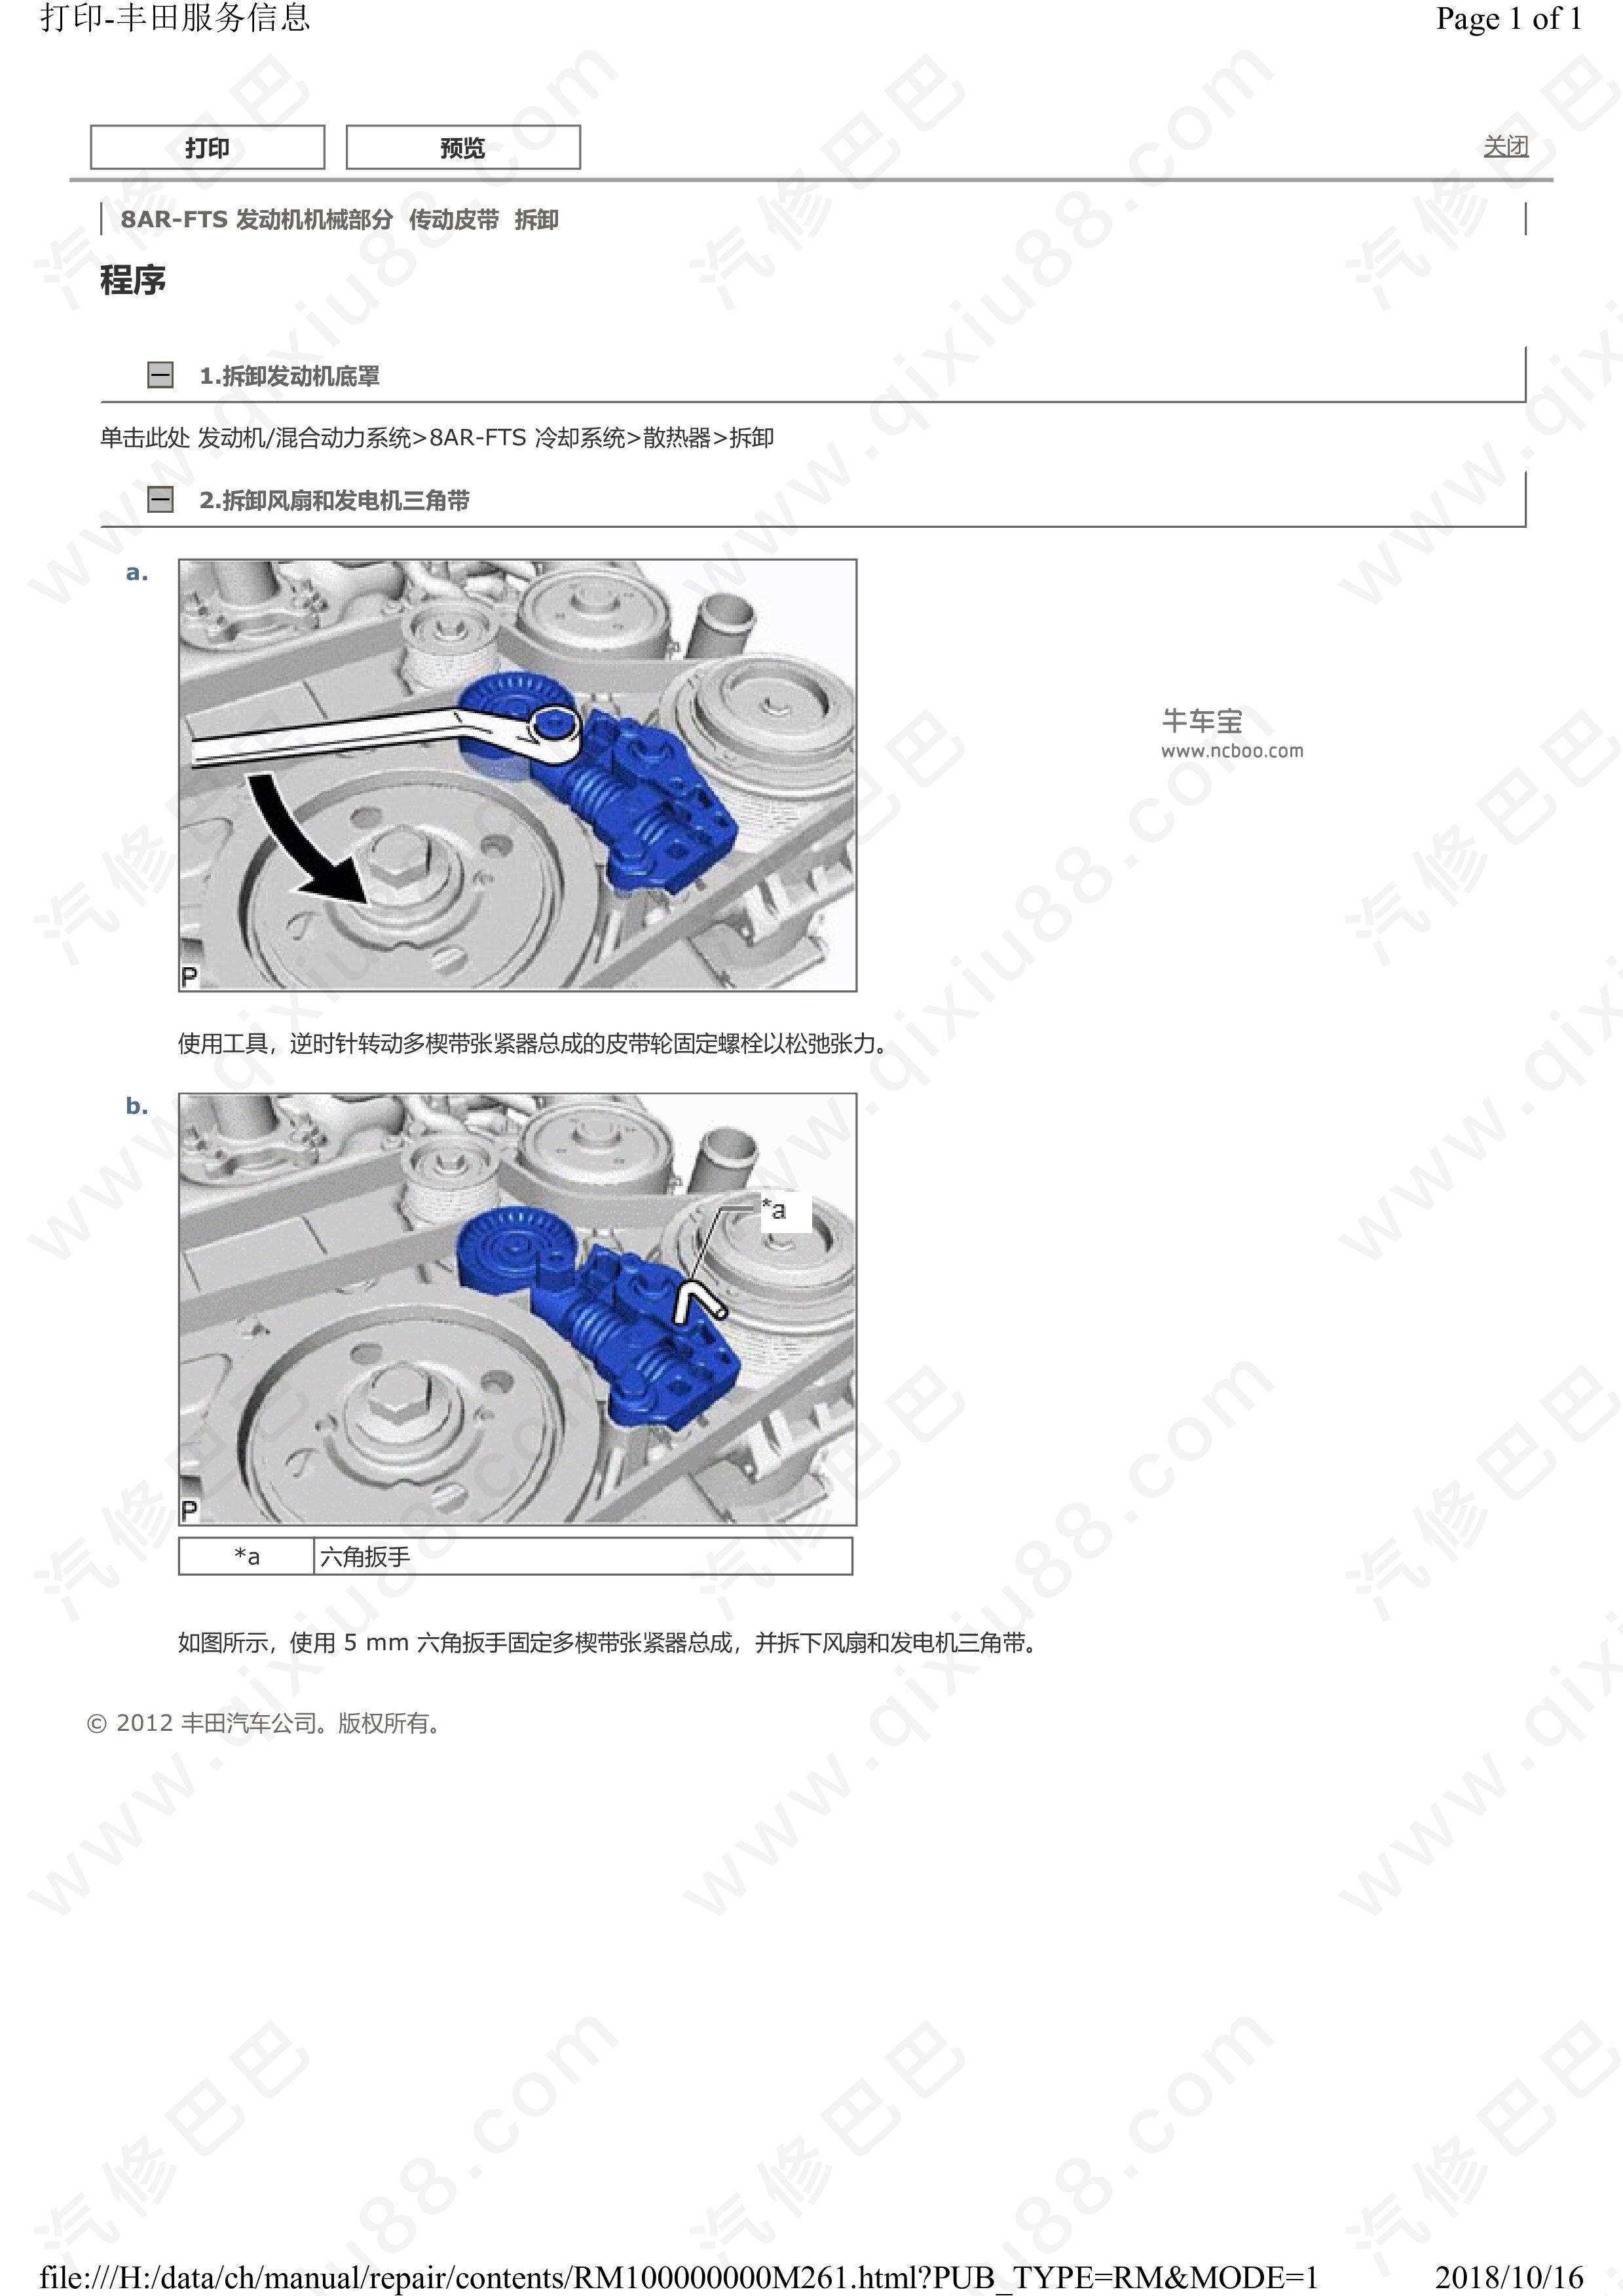 丰田皇冠发动机机械部分维修手册和电路图